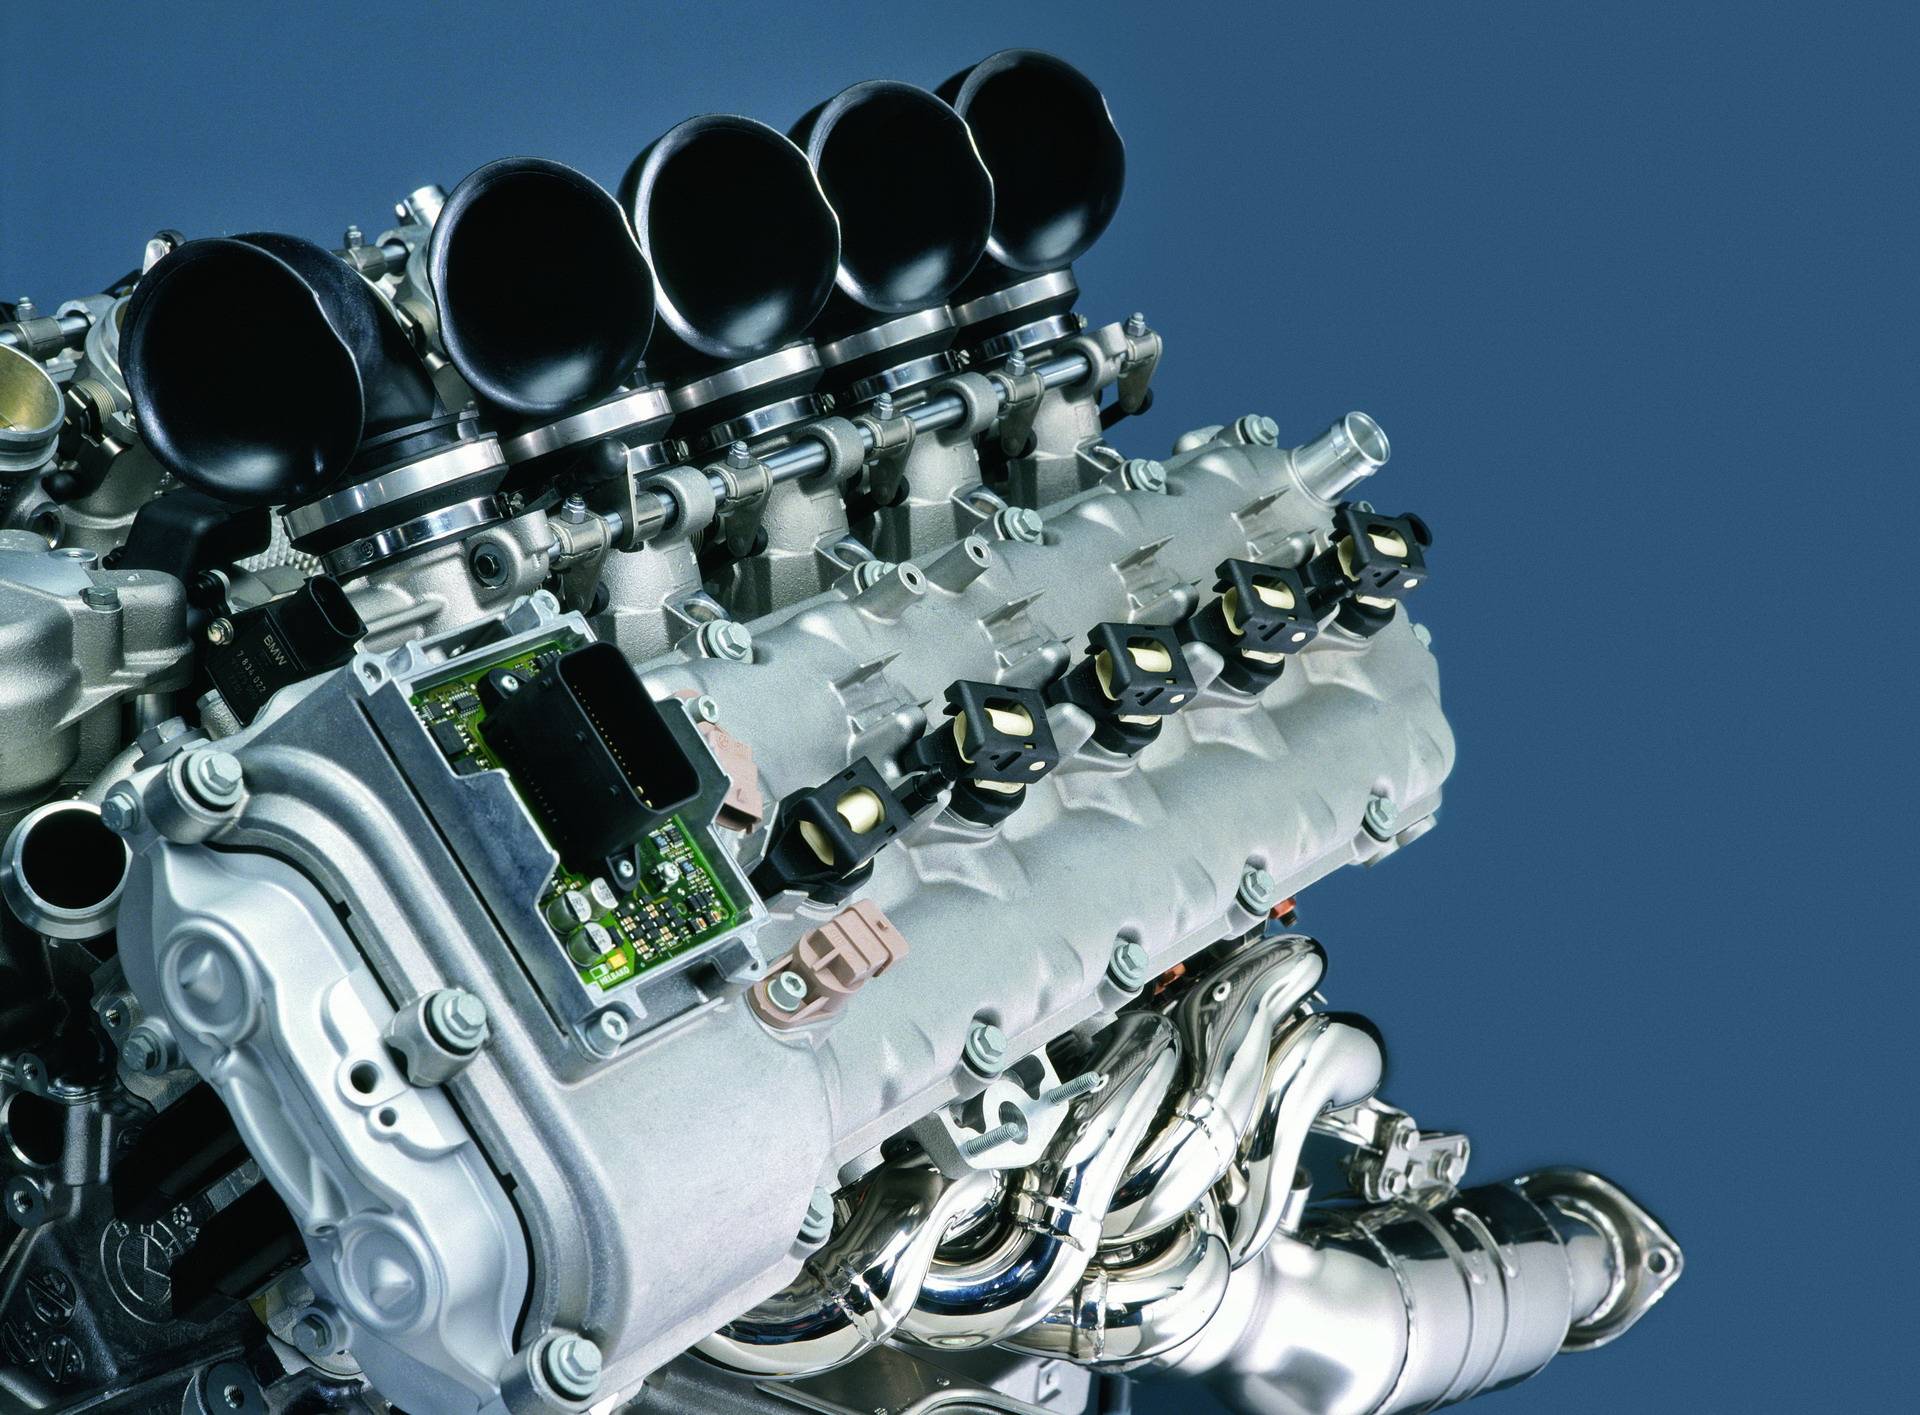 Двигатель BMW S85 V10 - легендарный мотор из Баварии 6